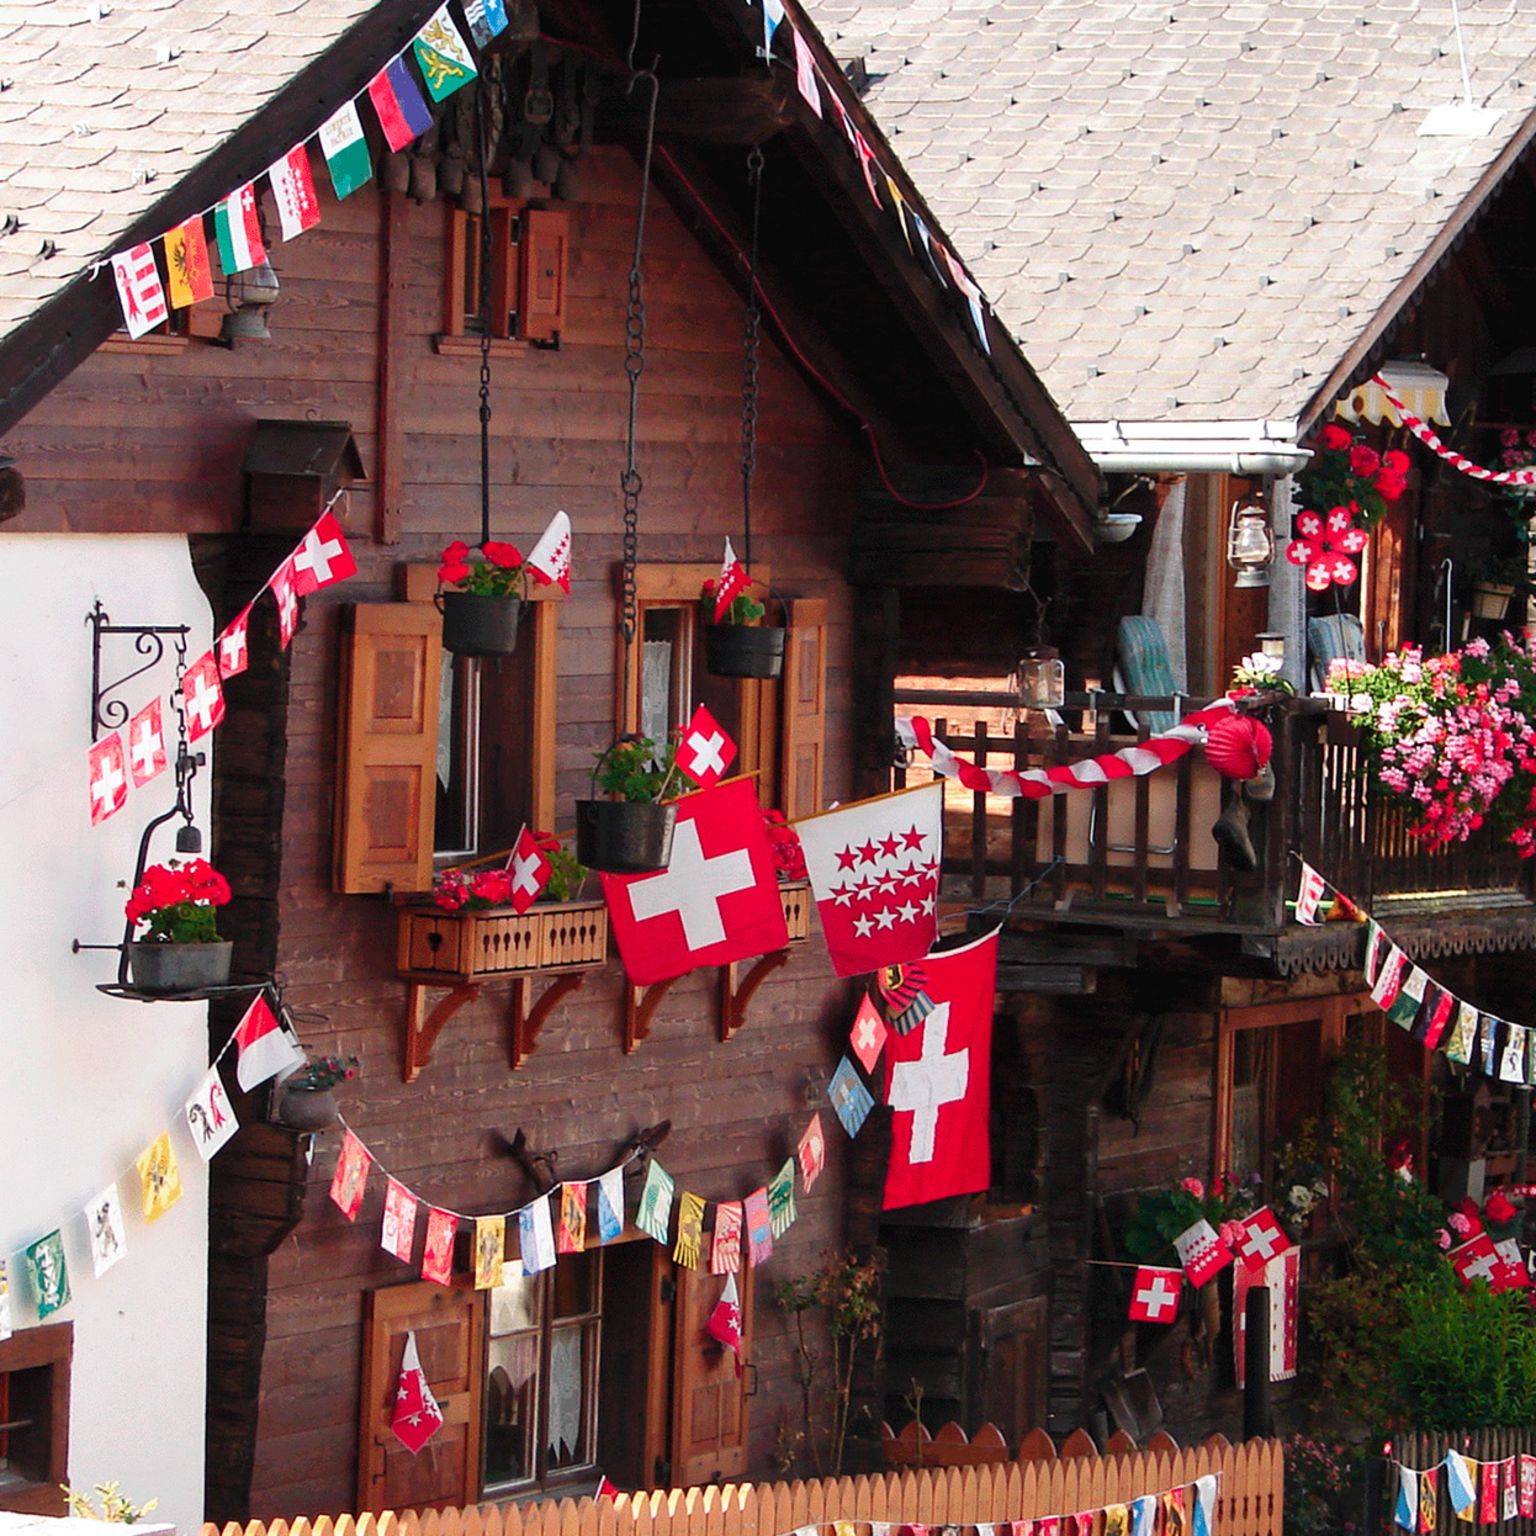 Fête nationale dans la Vallée du Trient, Valais, Suisse